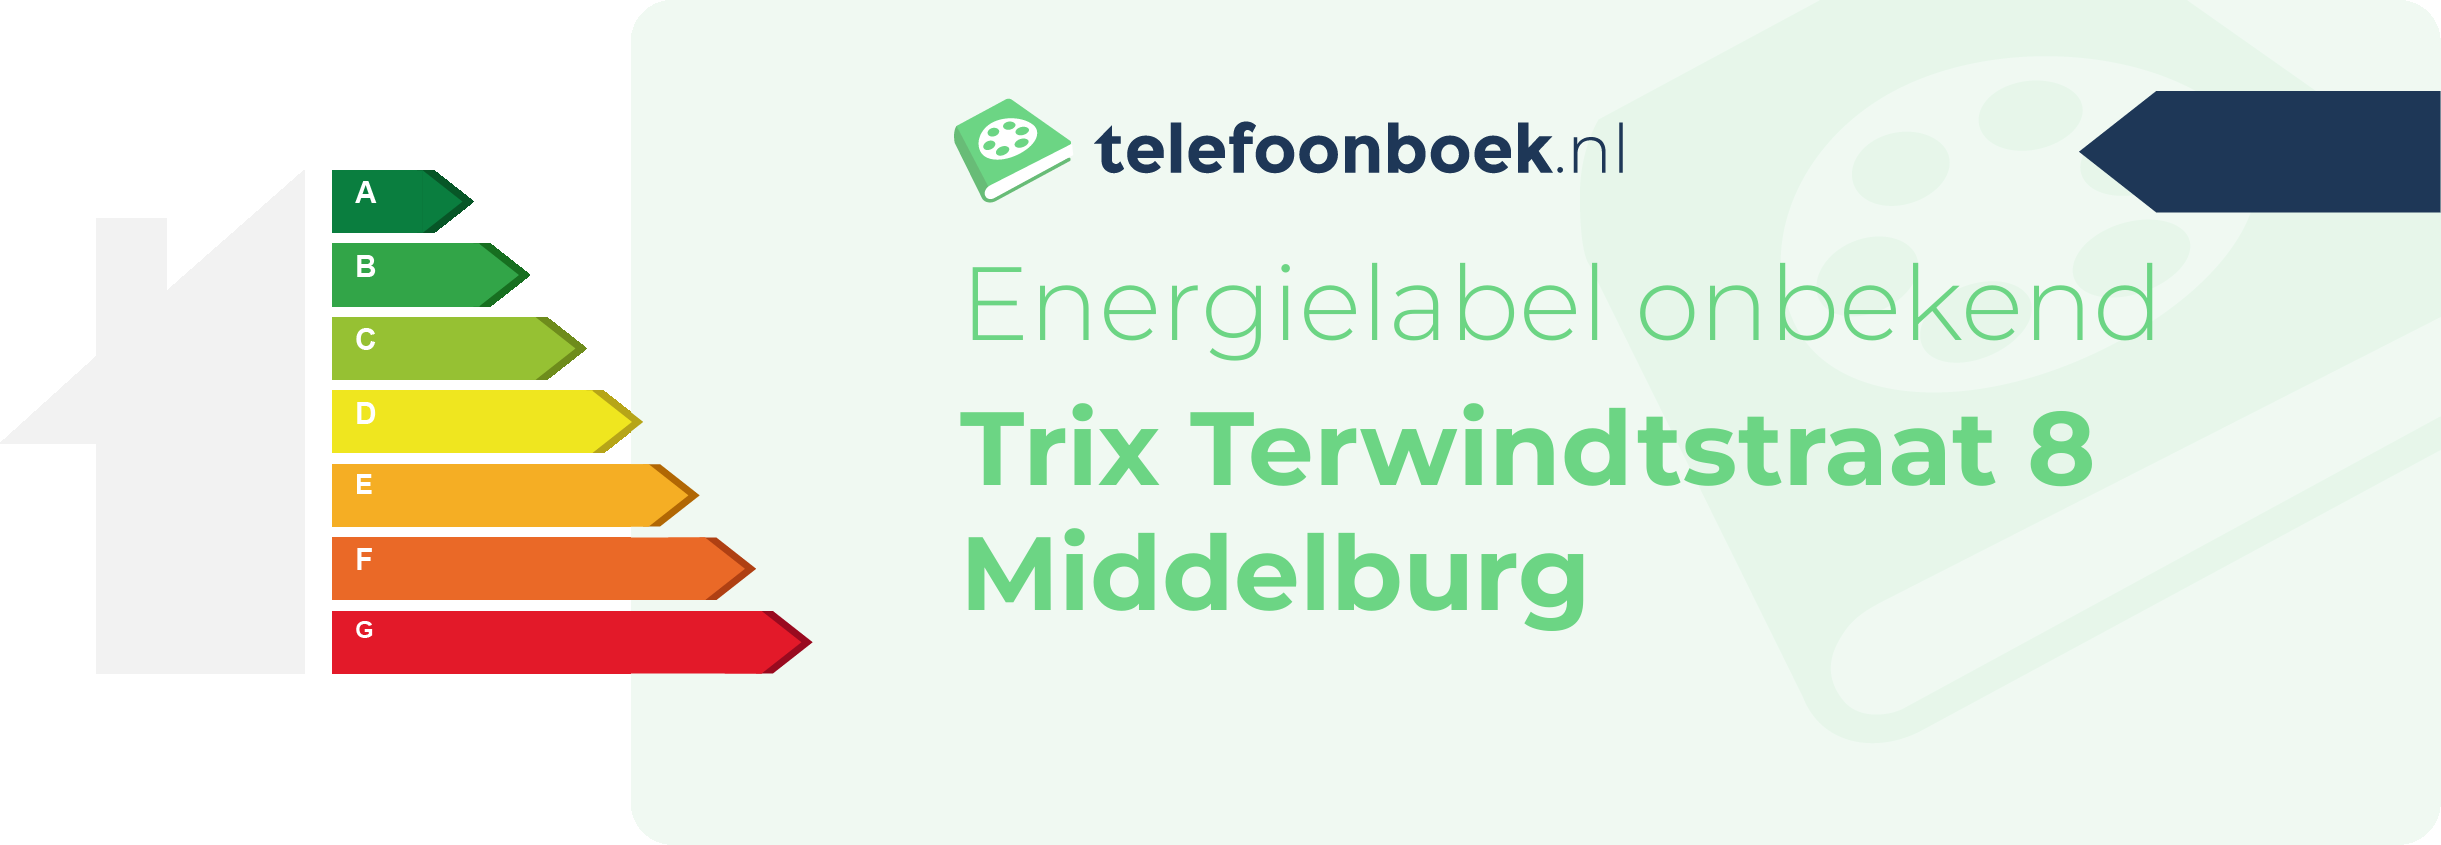 Energielabel Trix Terwindtstraat 8 Middelburg